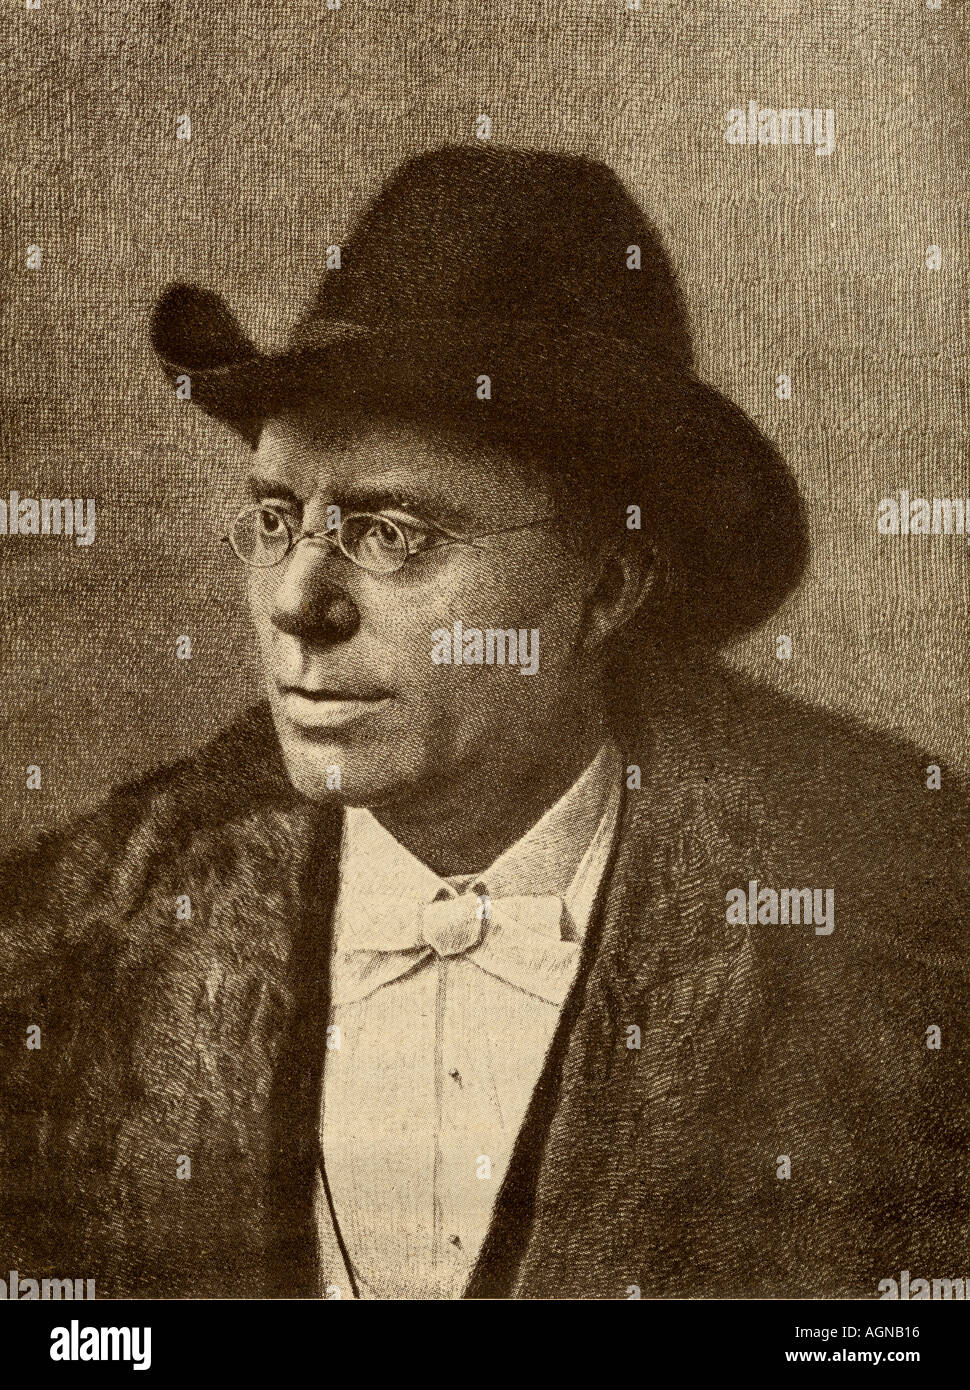 Jonas Lauritz Idemil mentira, 1833 - 1908. Noruega, poeta, novelista y dramaturgo. Foto de stock